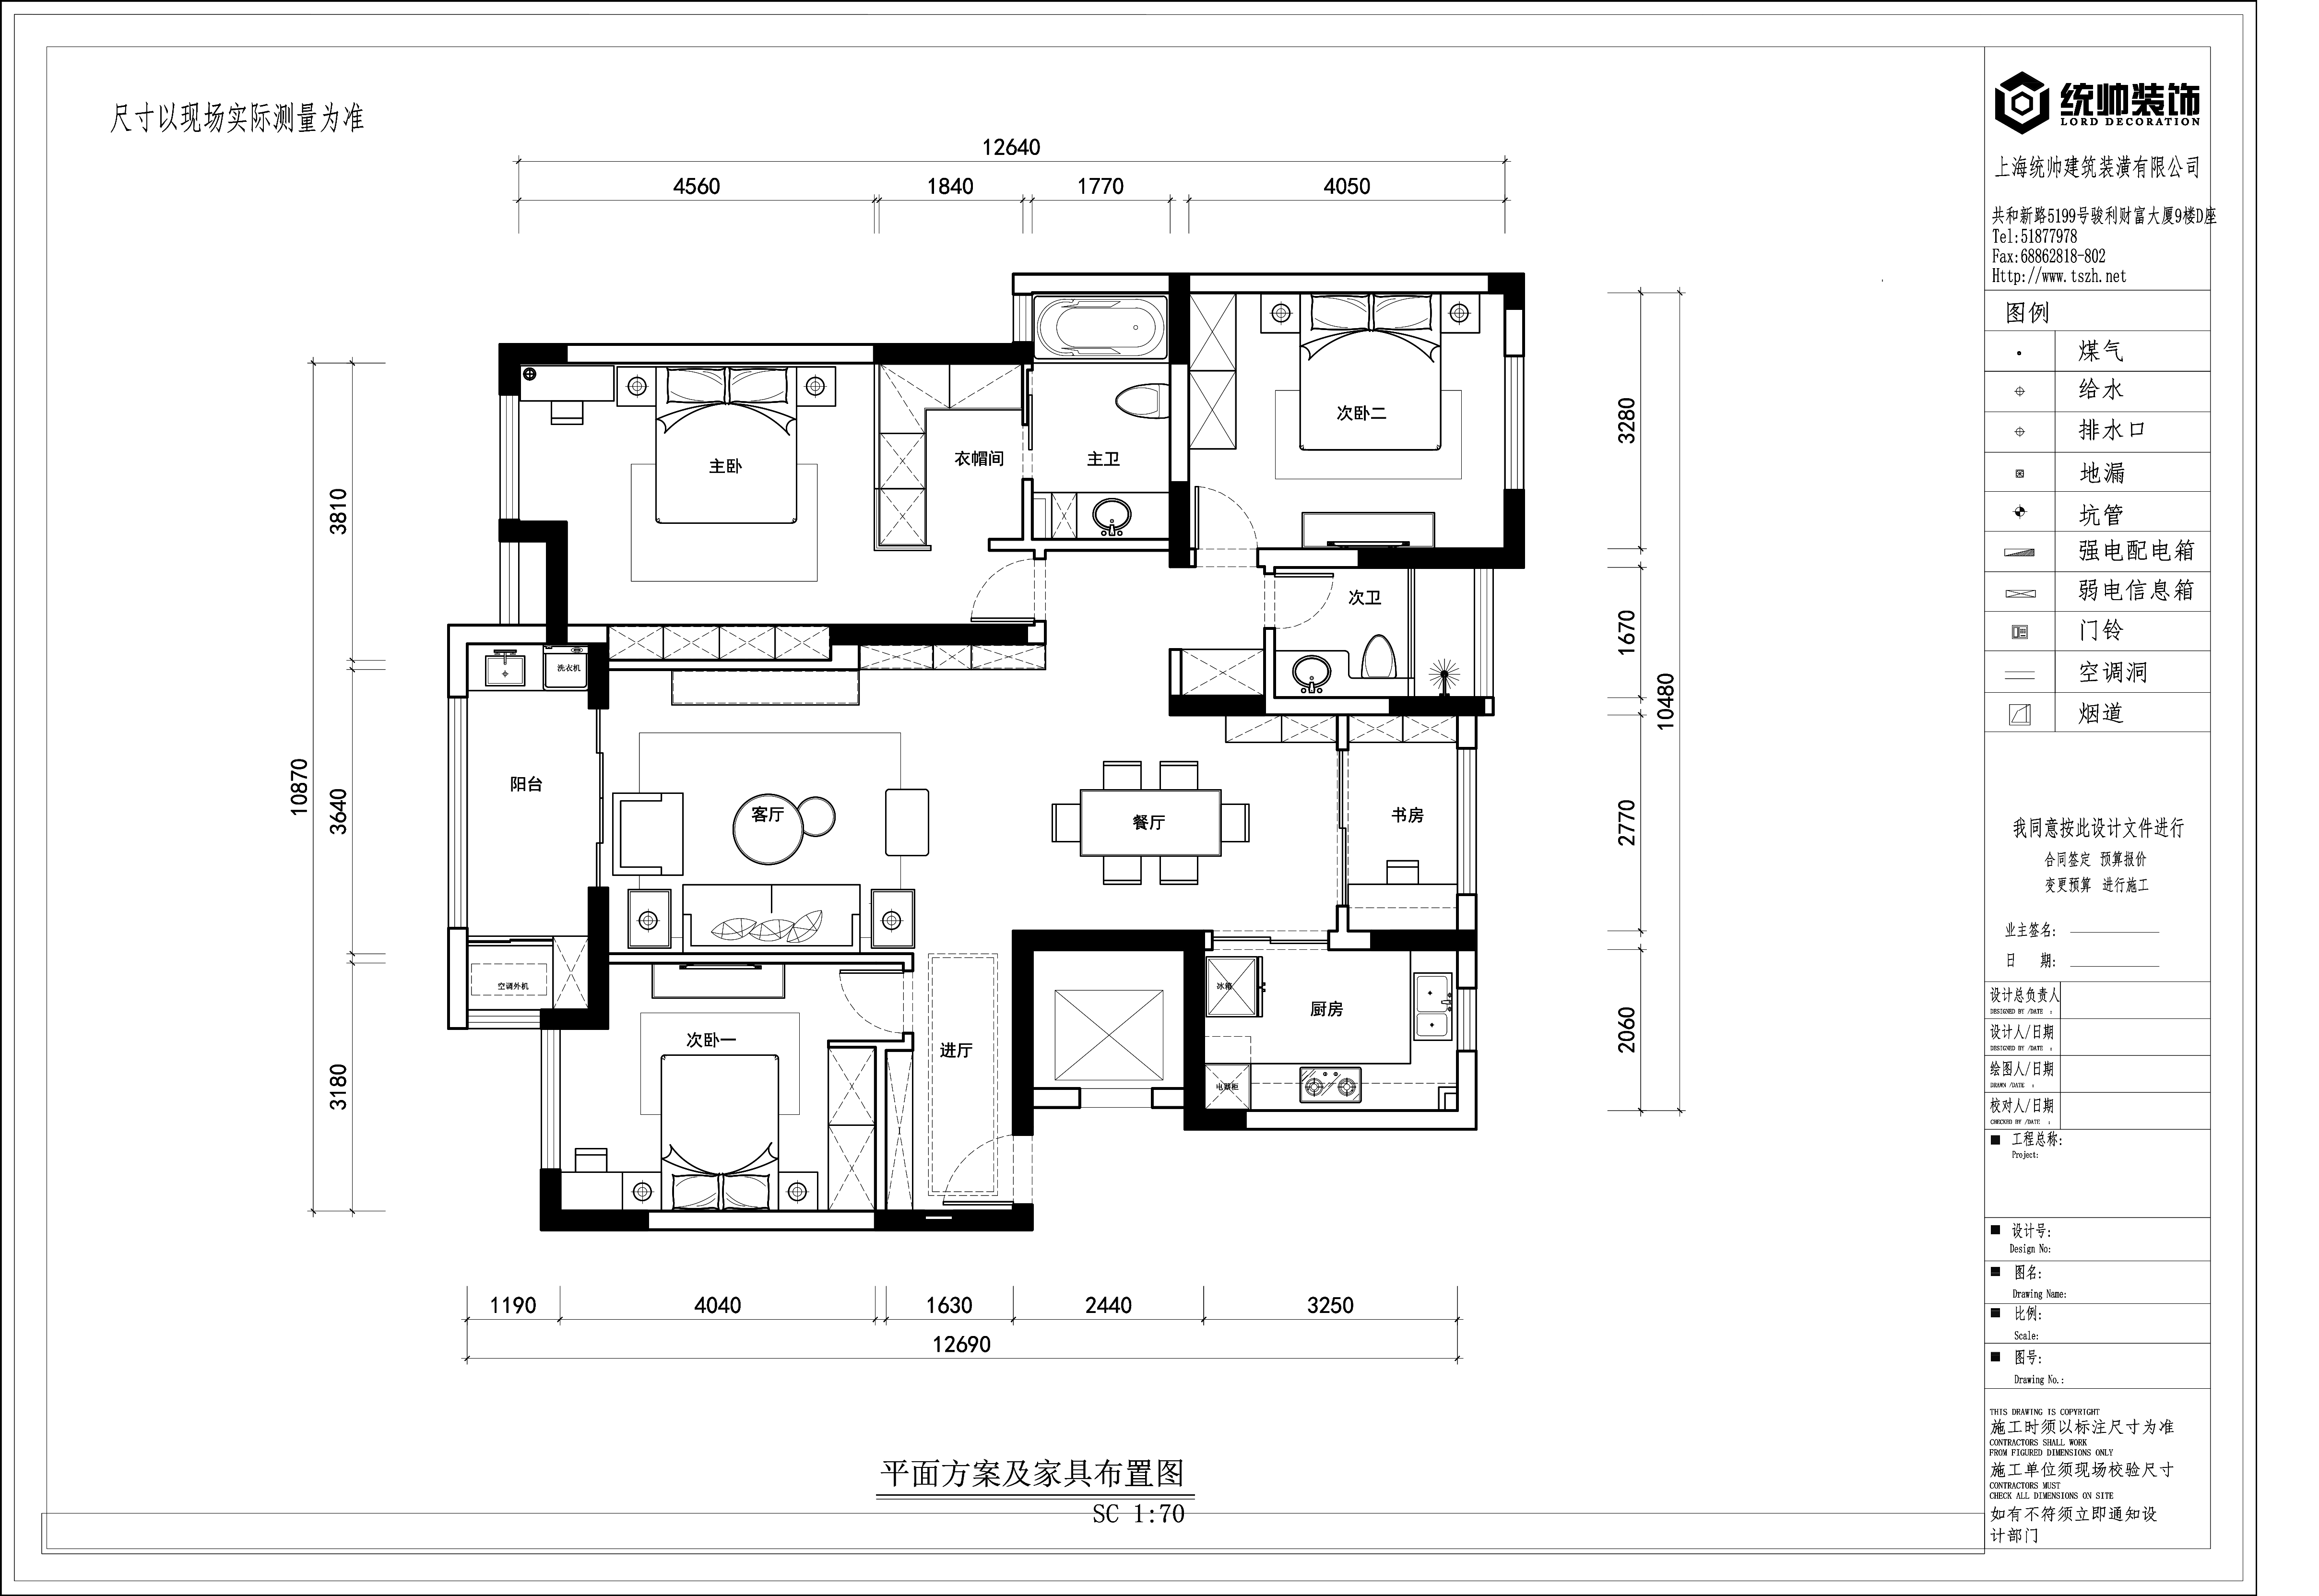 中环国际公寓户型分析图